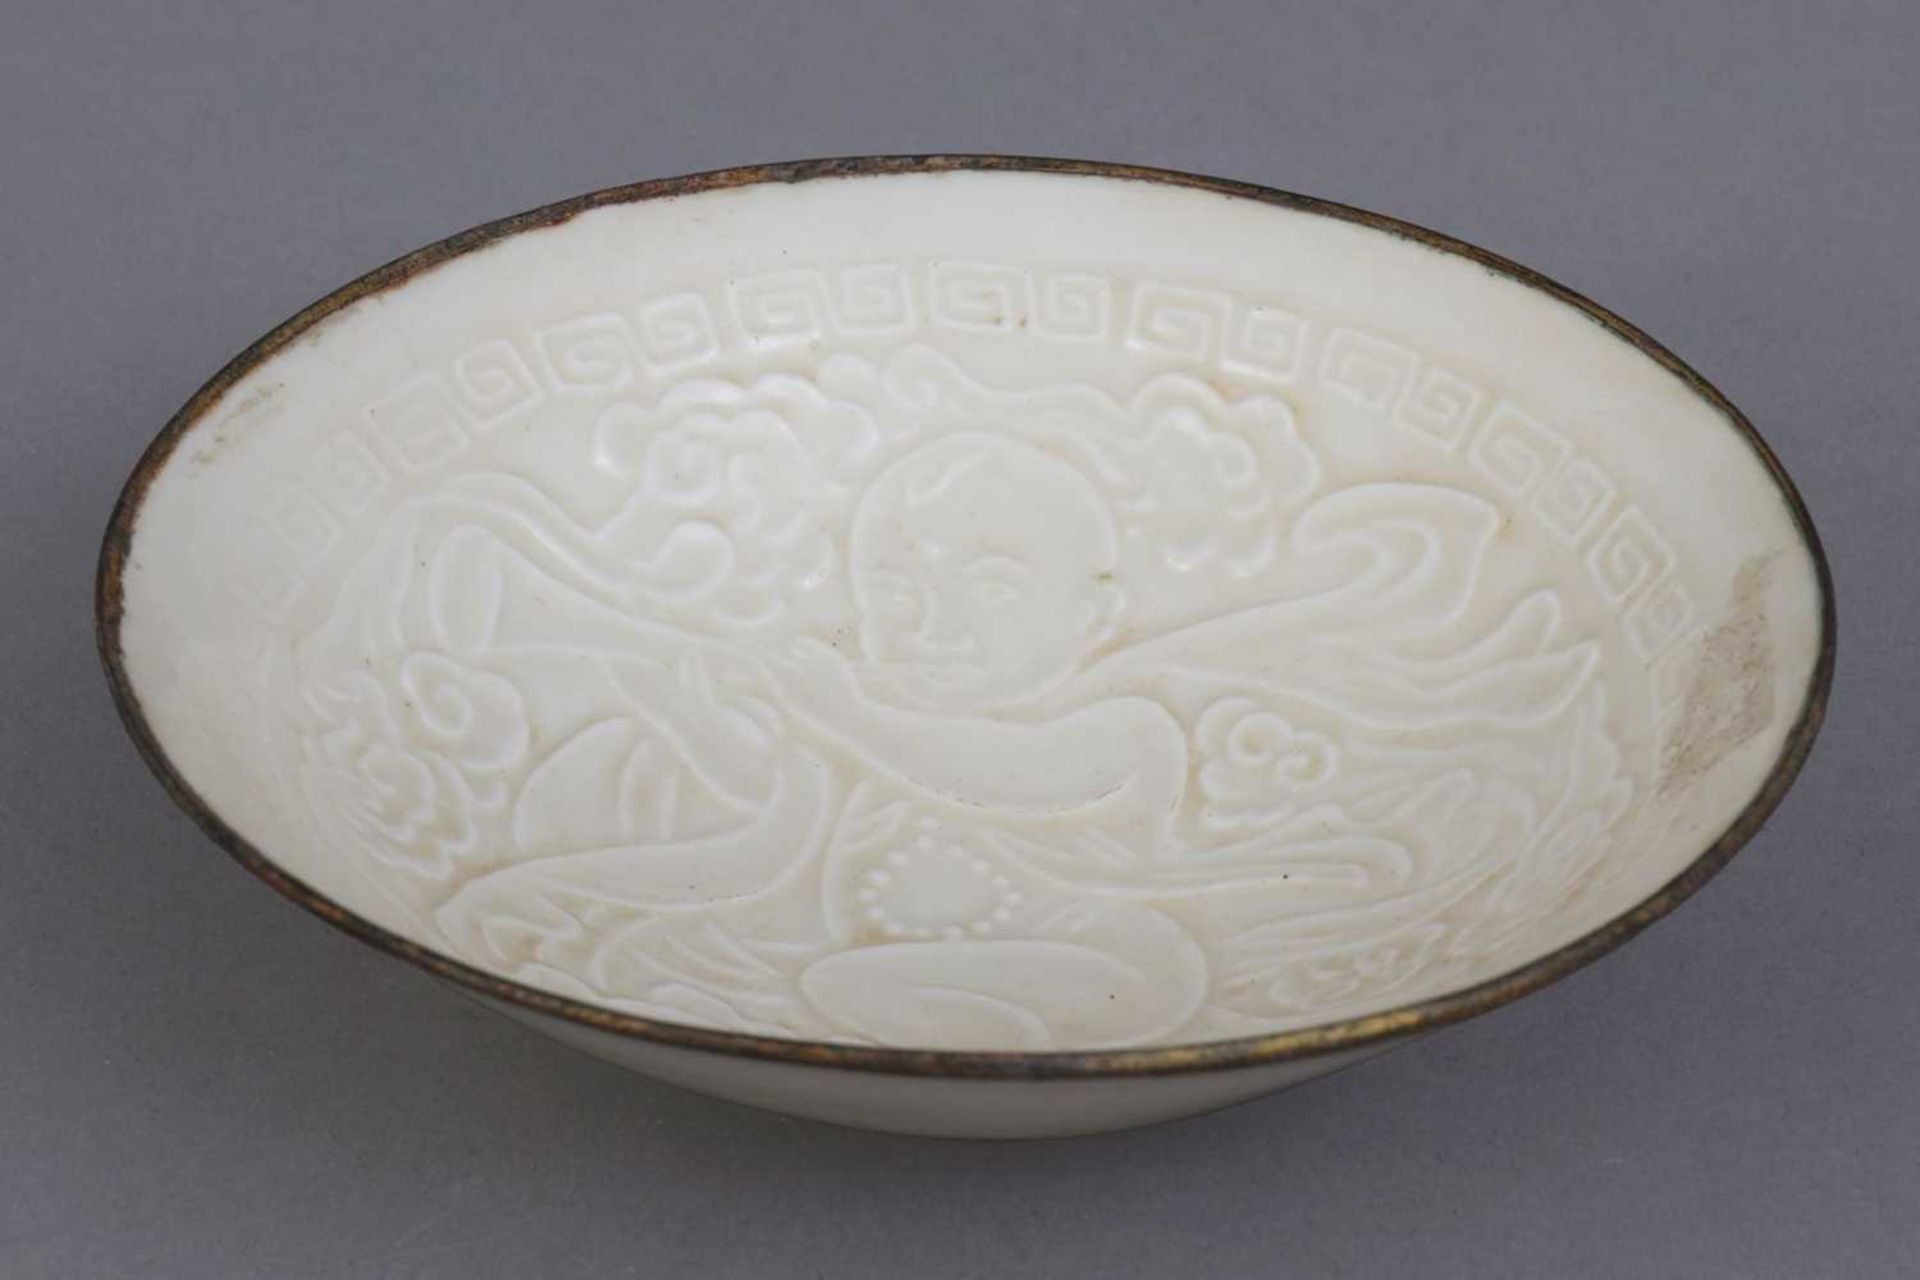 Chinesische Porzellanschale im Stile der Song Dynastie